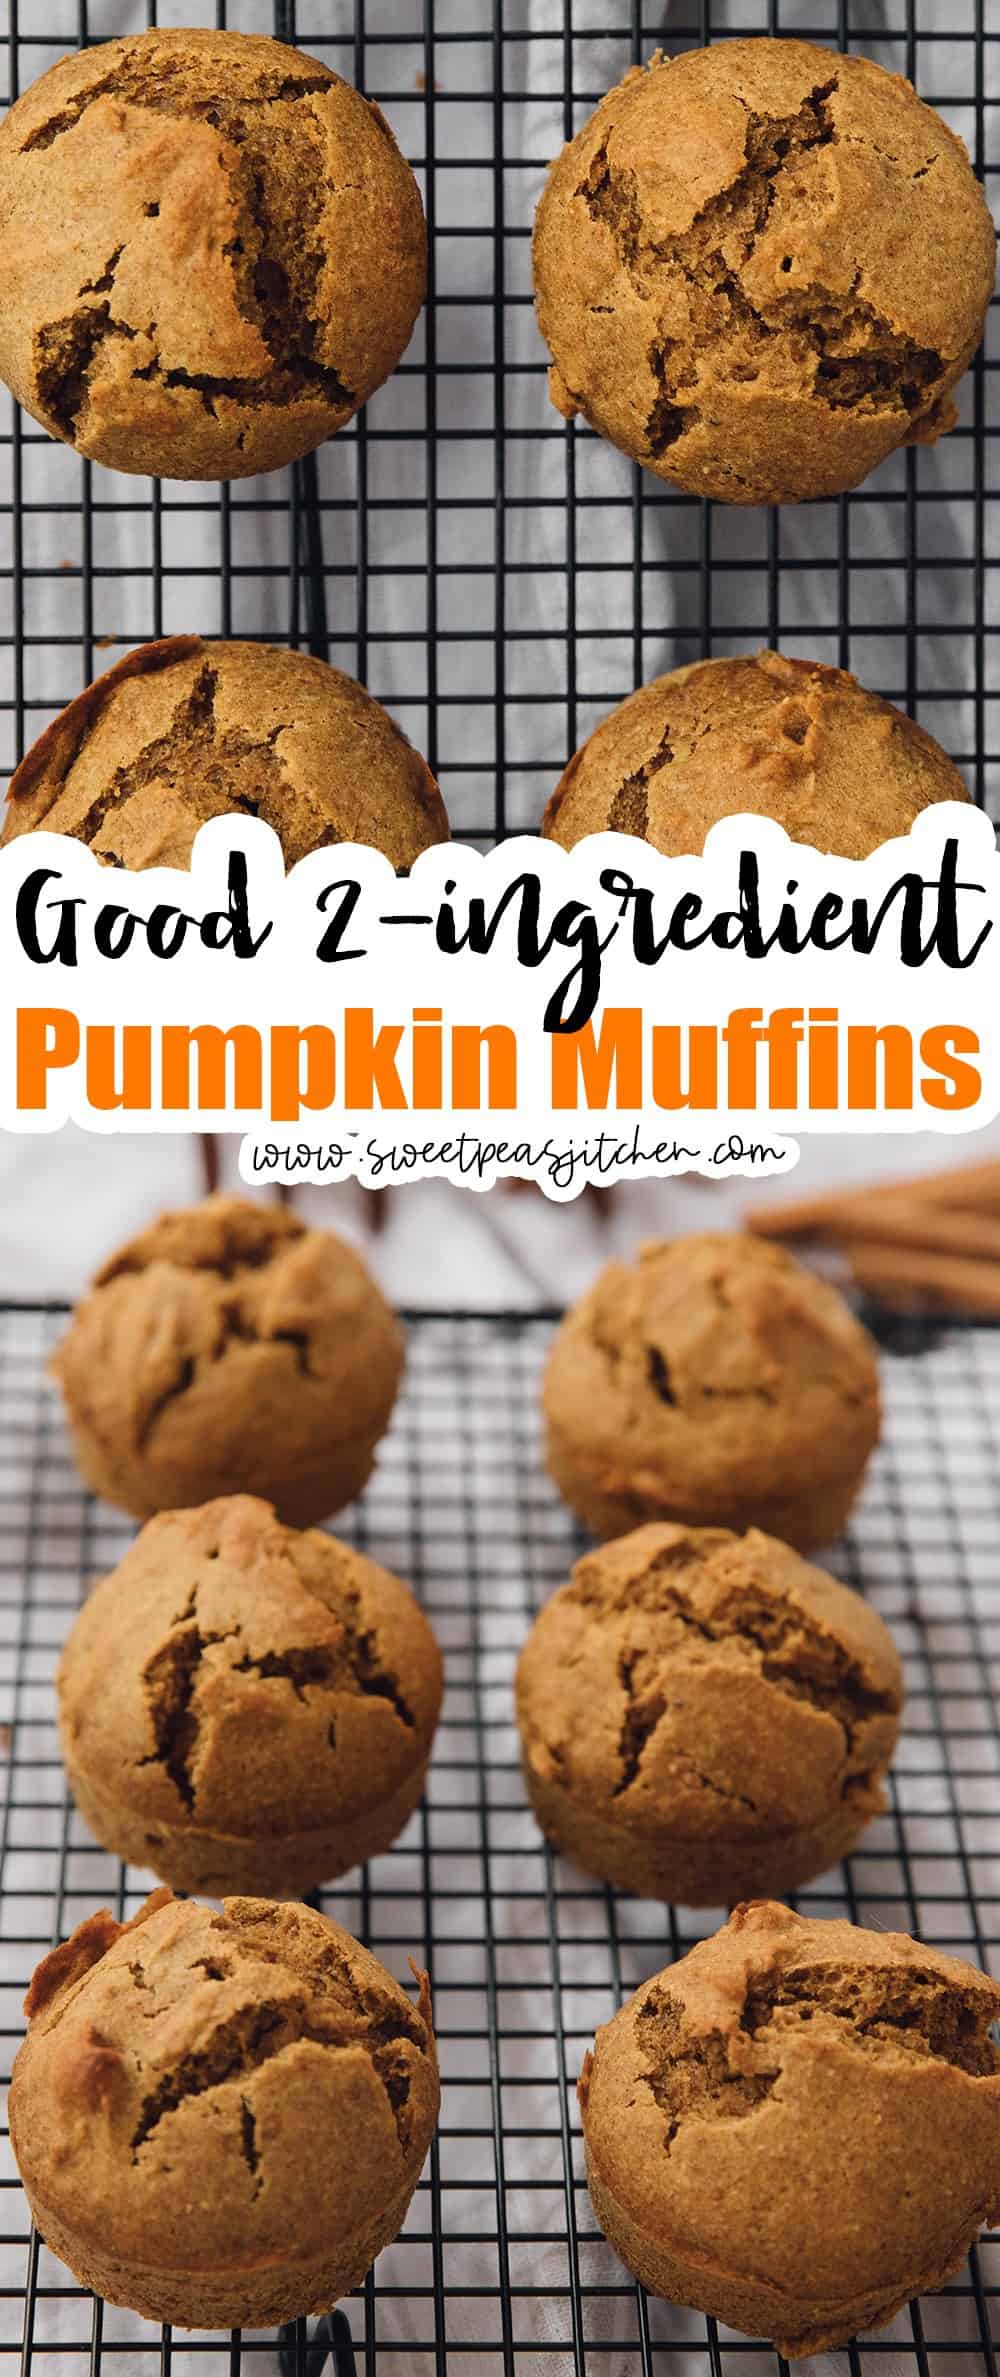 2-ingredient Pumpkin Muffins